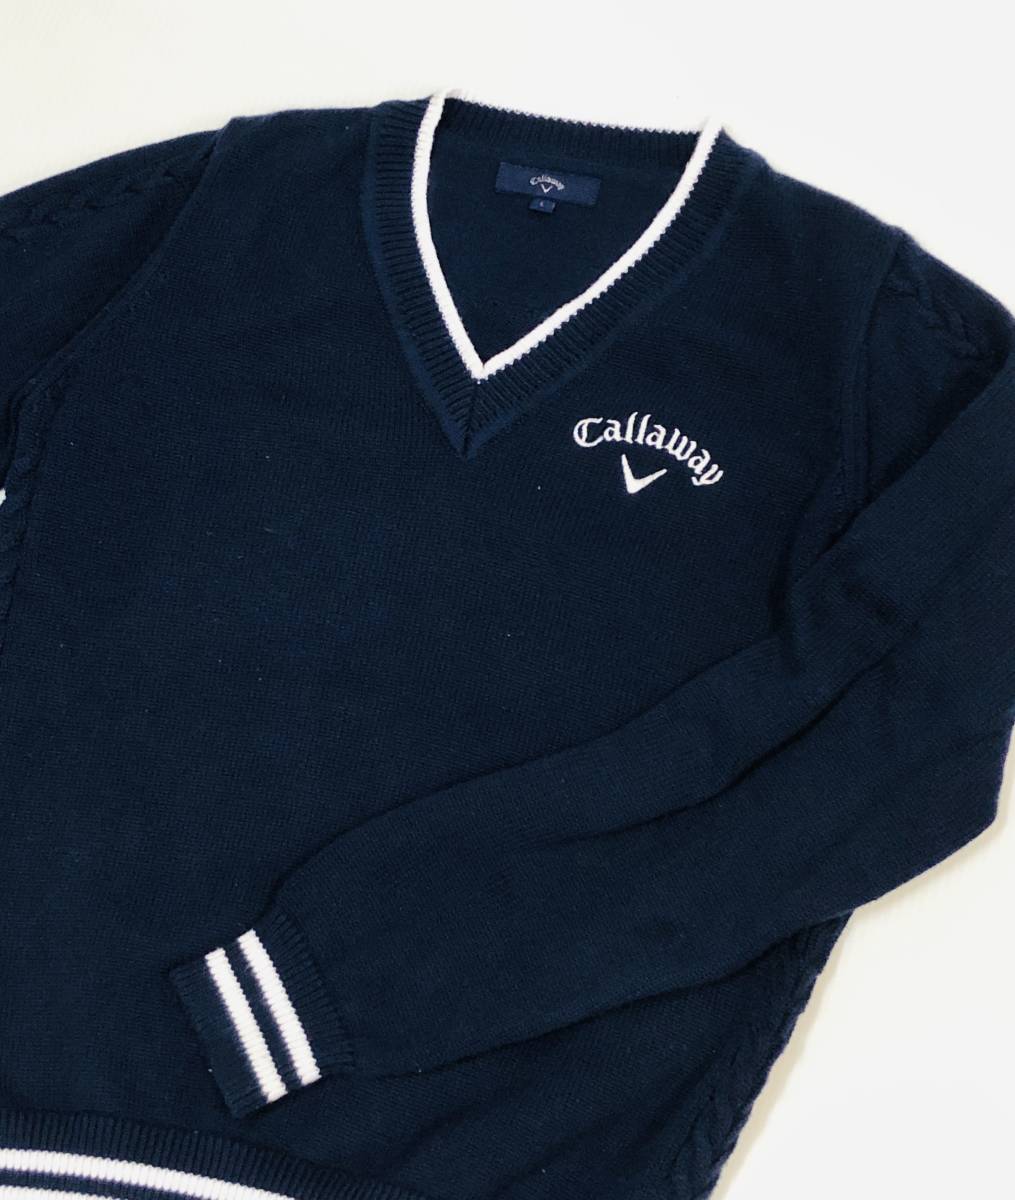 【超目玉】 Callaway (キャロウェイ) ケーブル編み ニット セーター